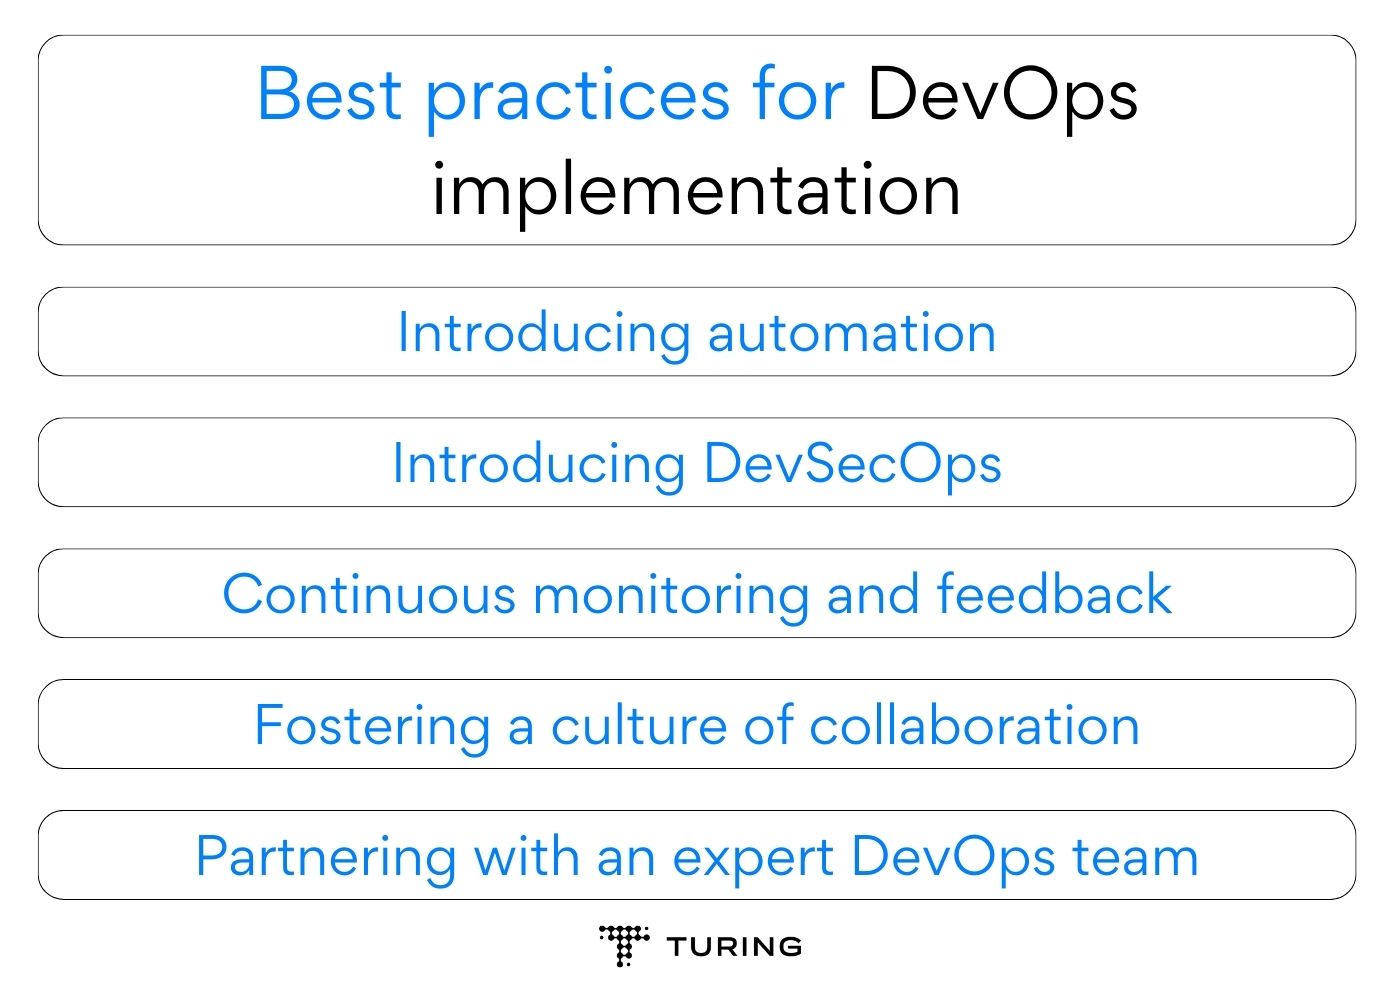 Best practices for DevOps implementation